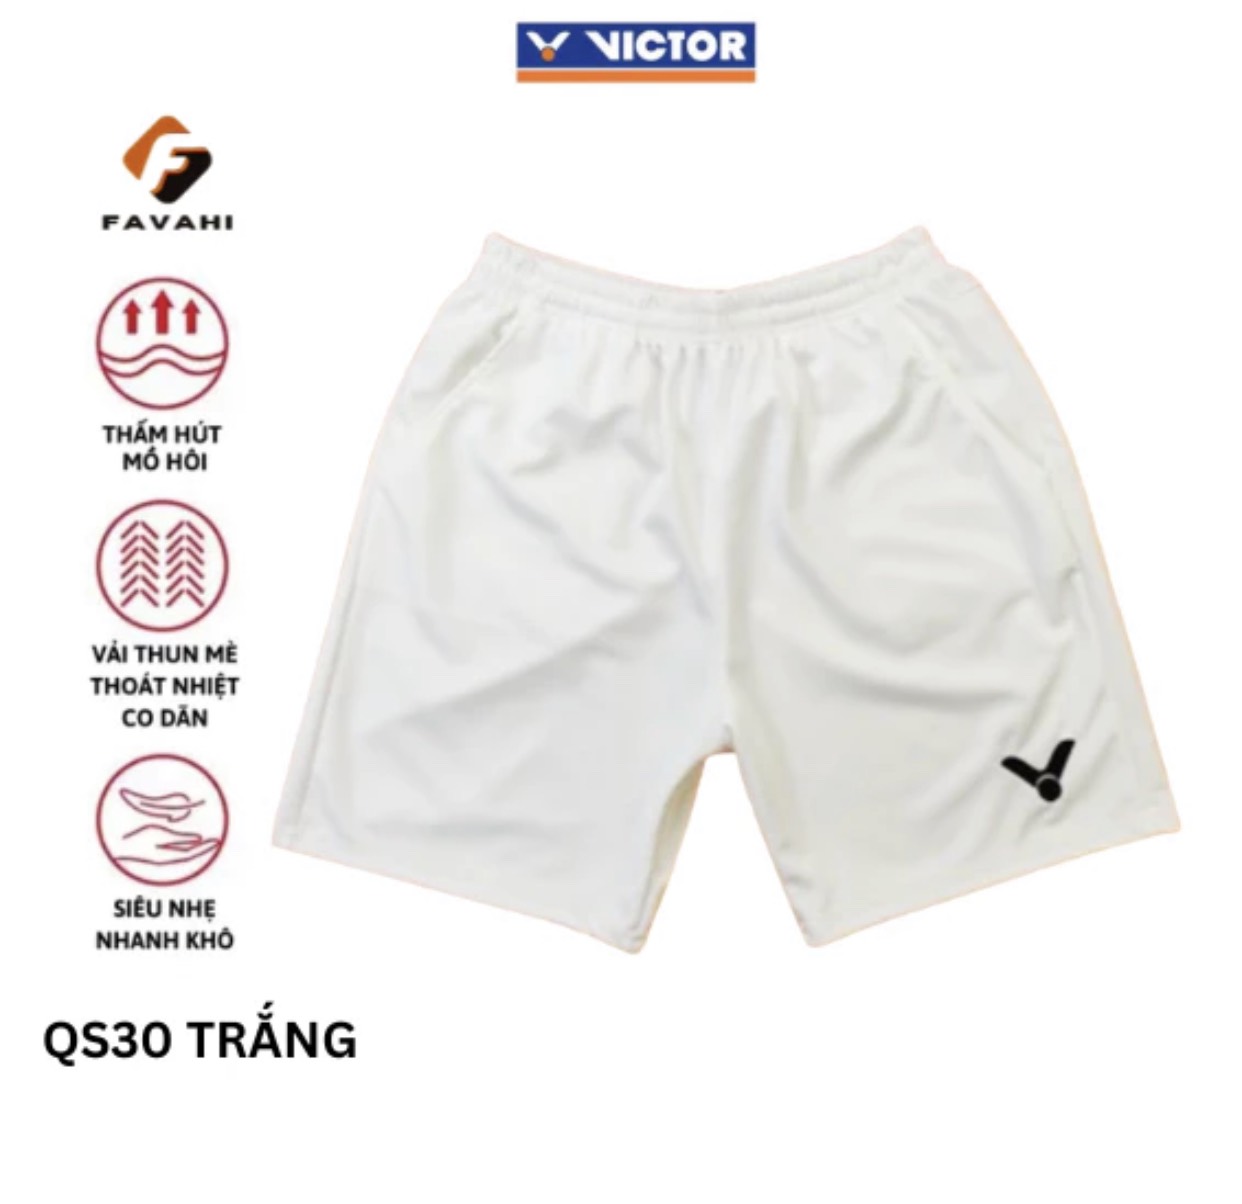 Quần short Victor mã QS30 màu trắng thi đấu và tập luyện cầu lông chuyên